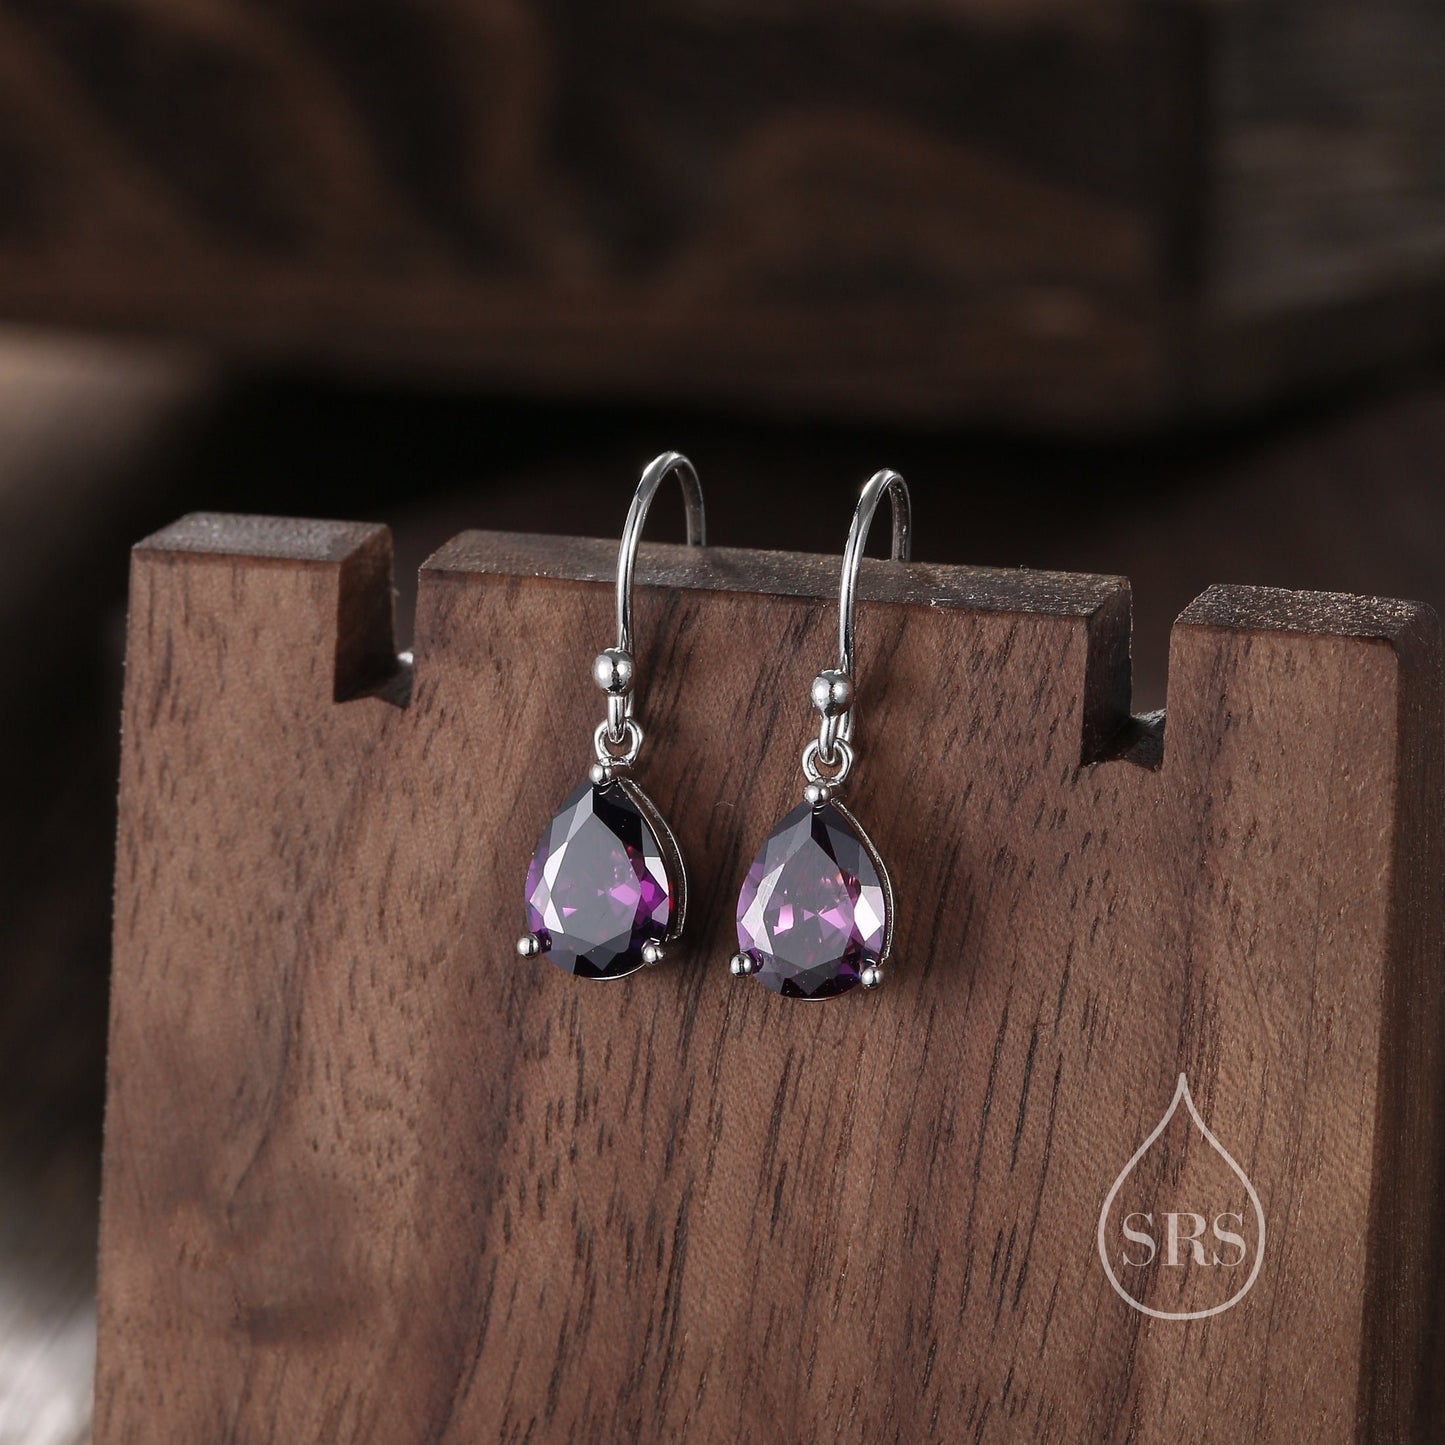 Dark Amethyst Purple Pear Cut CZ Drop Earrings in Sterling Silver, Silver or Gold, Dark Purple Droplet Dangle Earrings